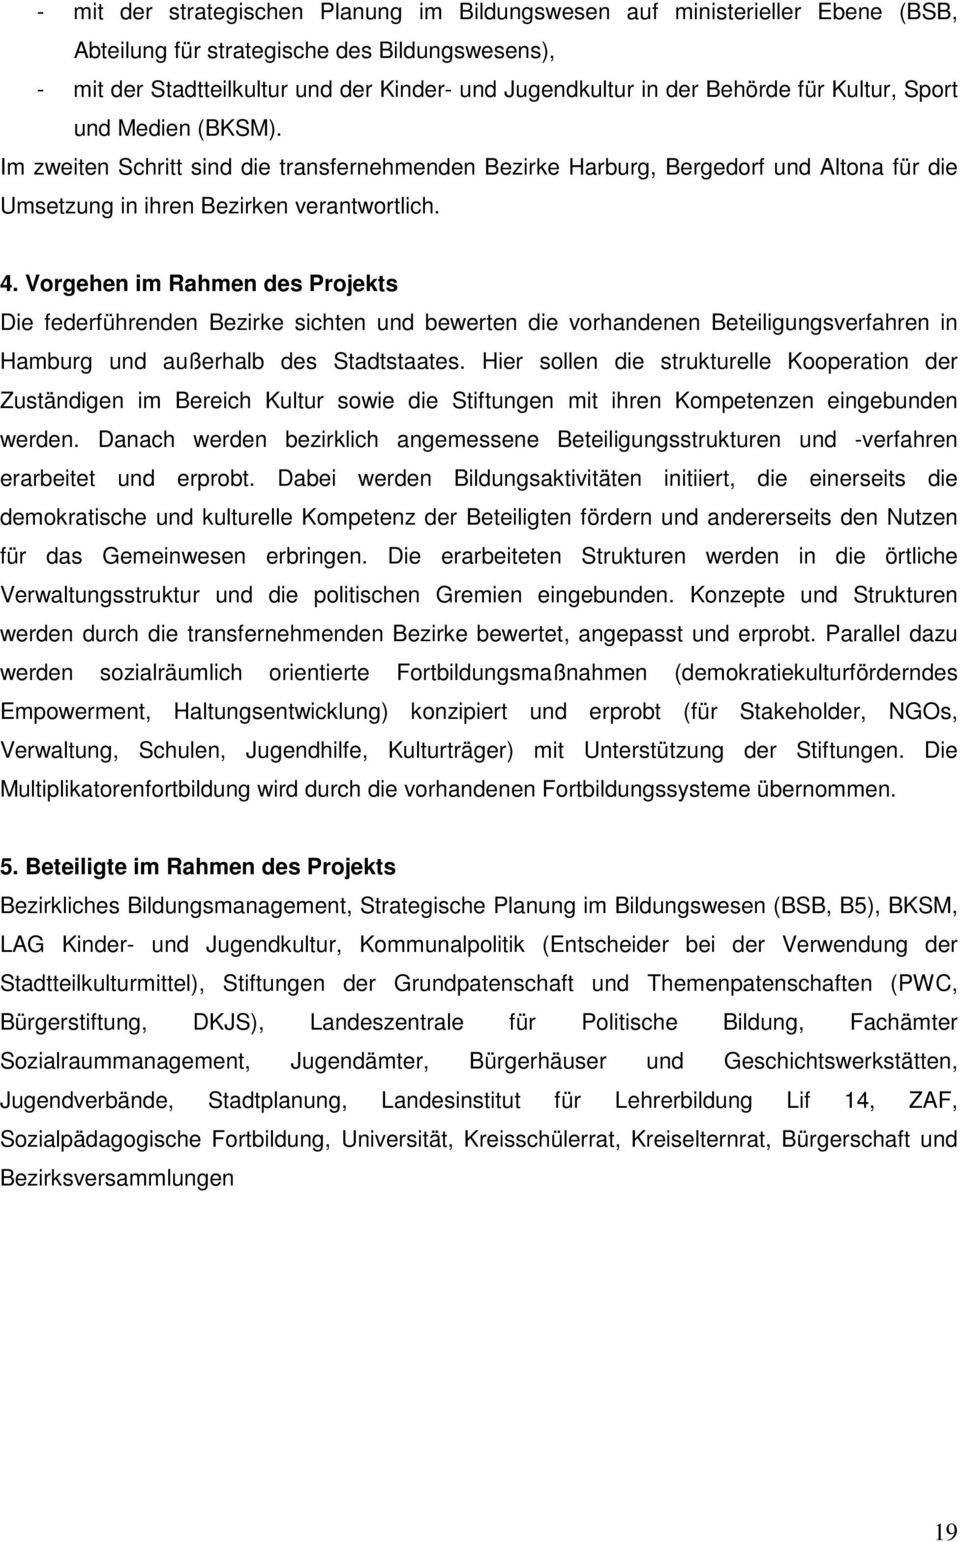 Vorgehen im Rahmen des Projekts Die federführenden Bezirke sichten und bewerten die vorhandenen Beteiligungsverfahren in Hamburg und außerhalb des Stadtstaates.